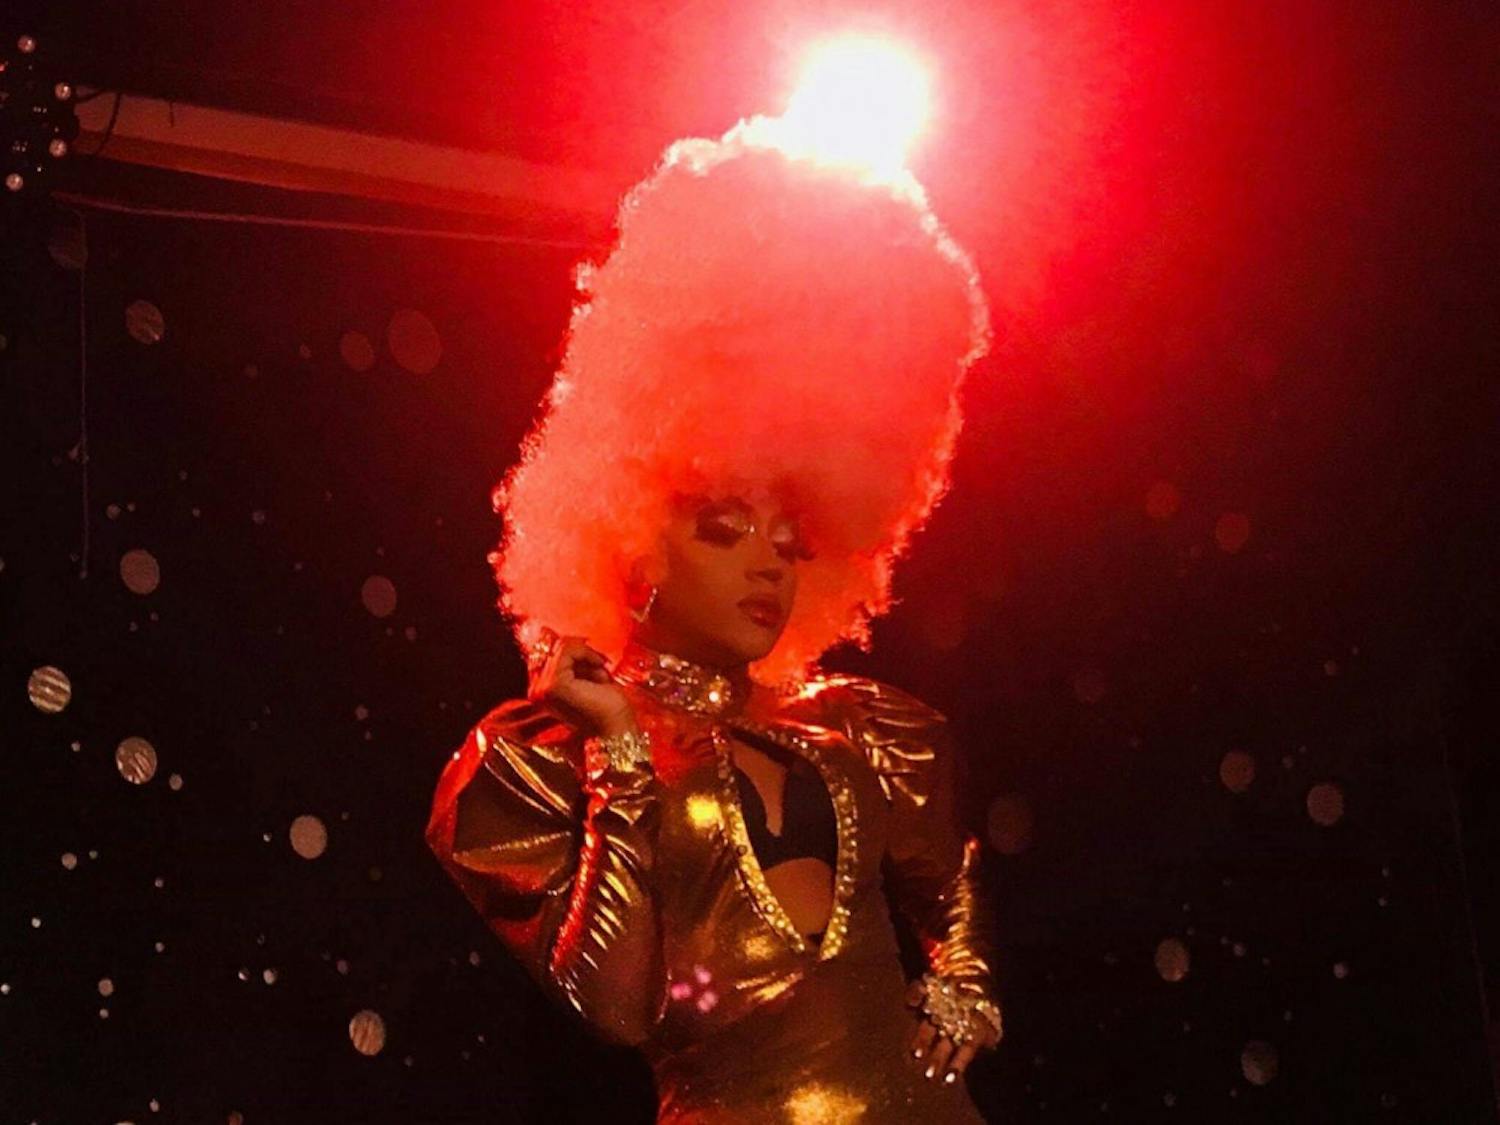 A photo of drag queen Naomi Dix performing
Photo courtesy of Naomi Dix